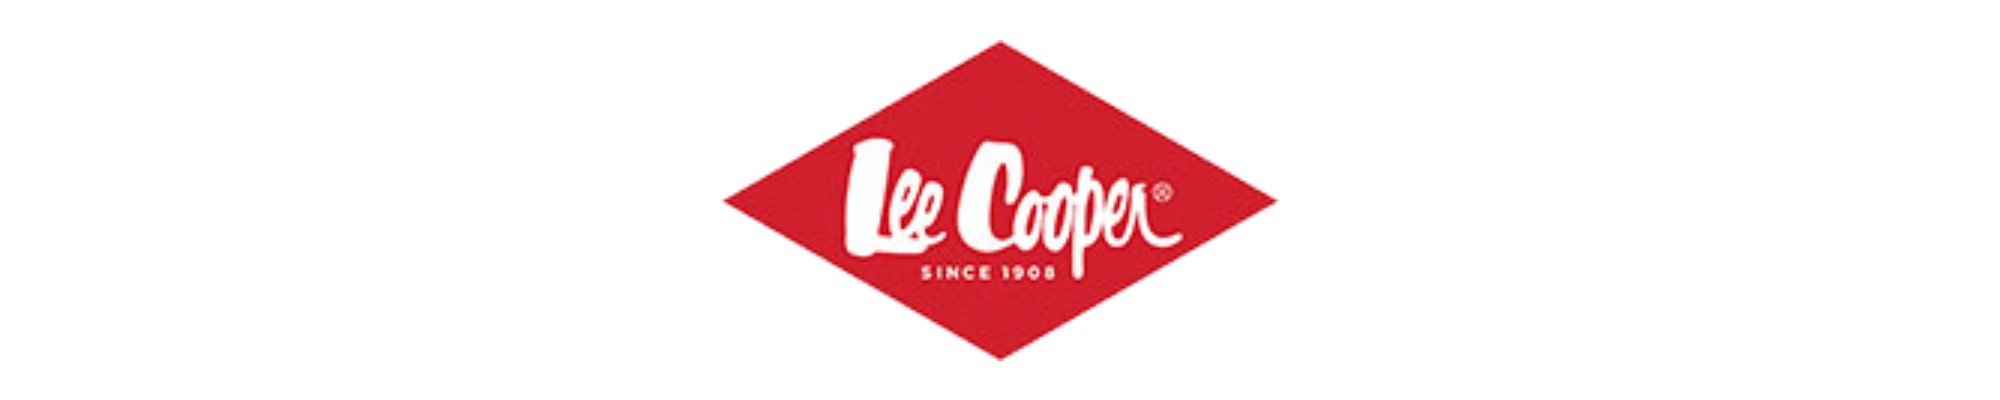 Mayorista de ropa children Lee Cooper